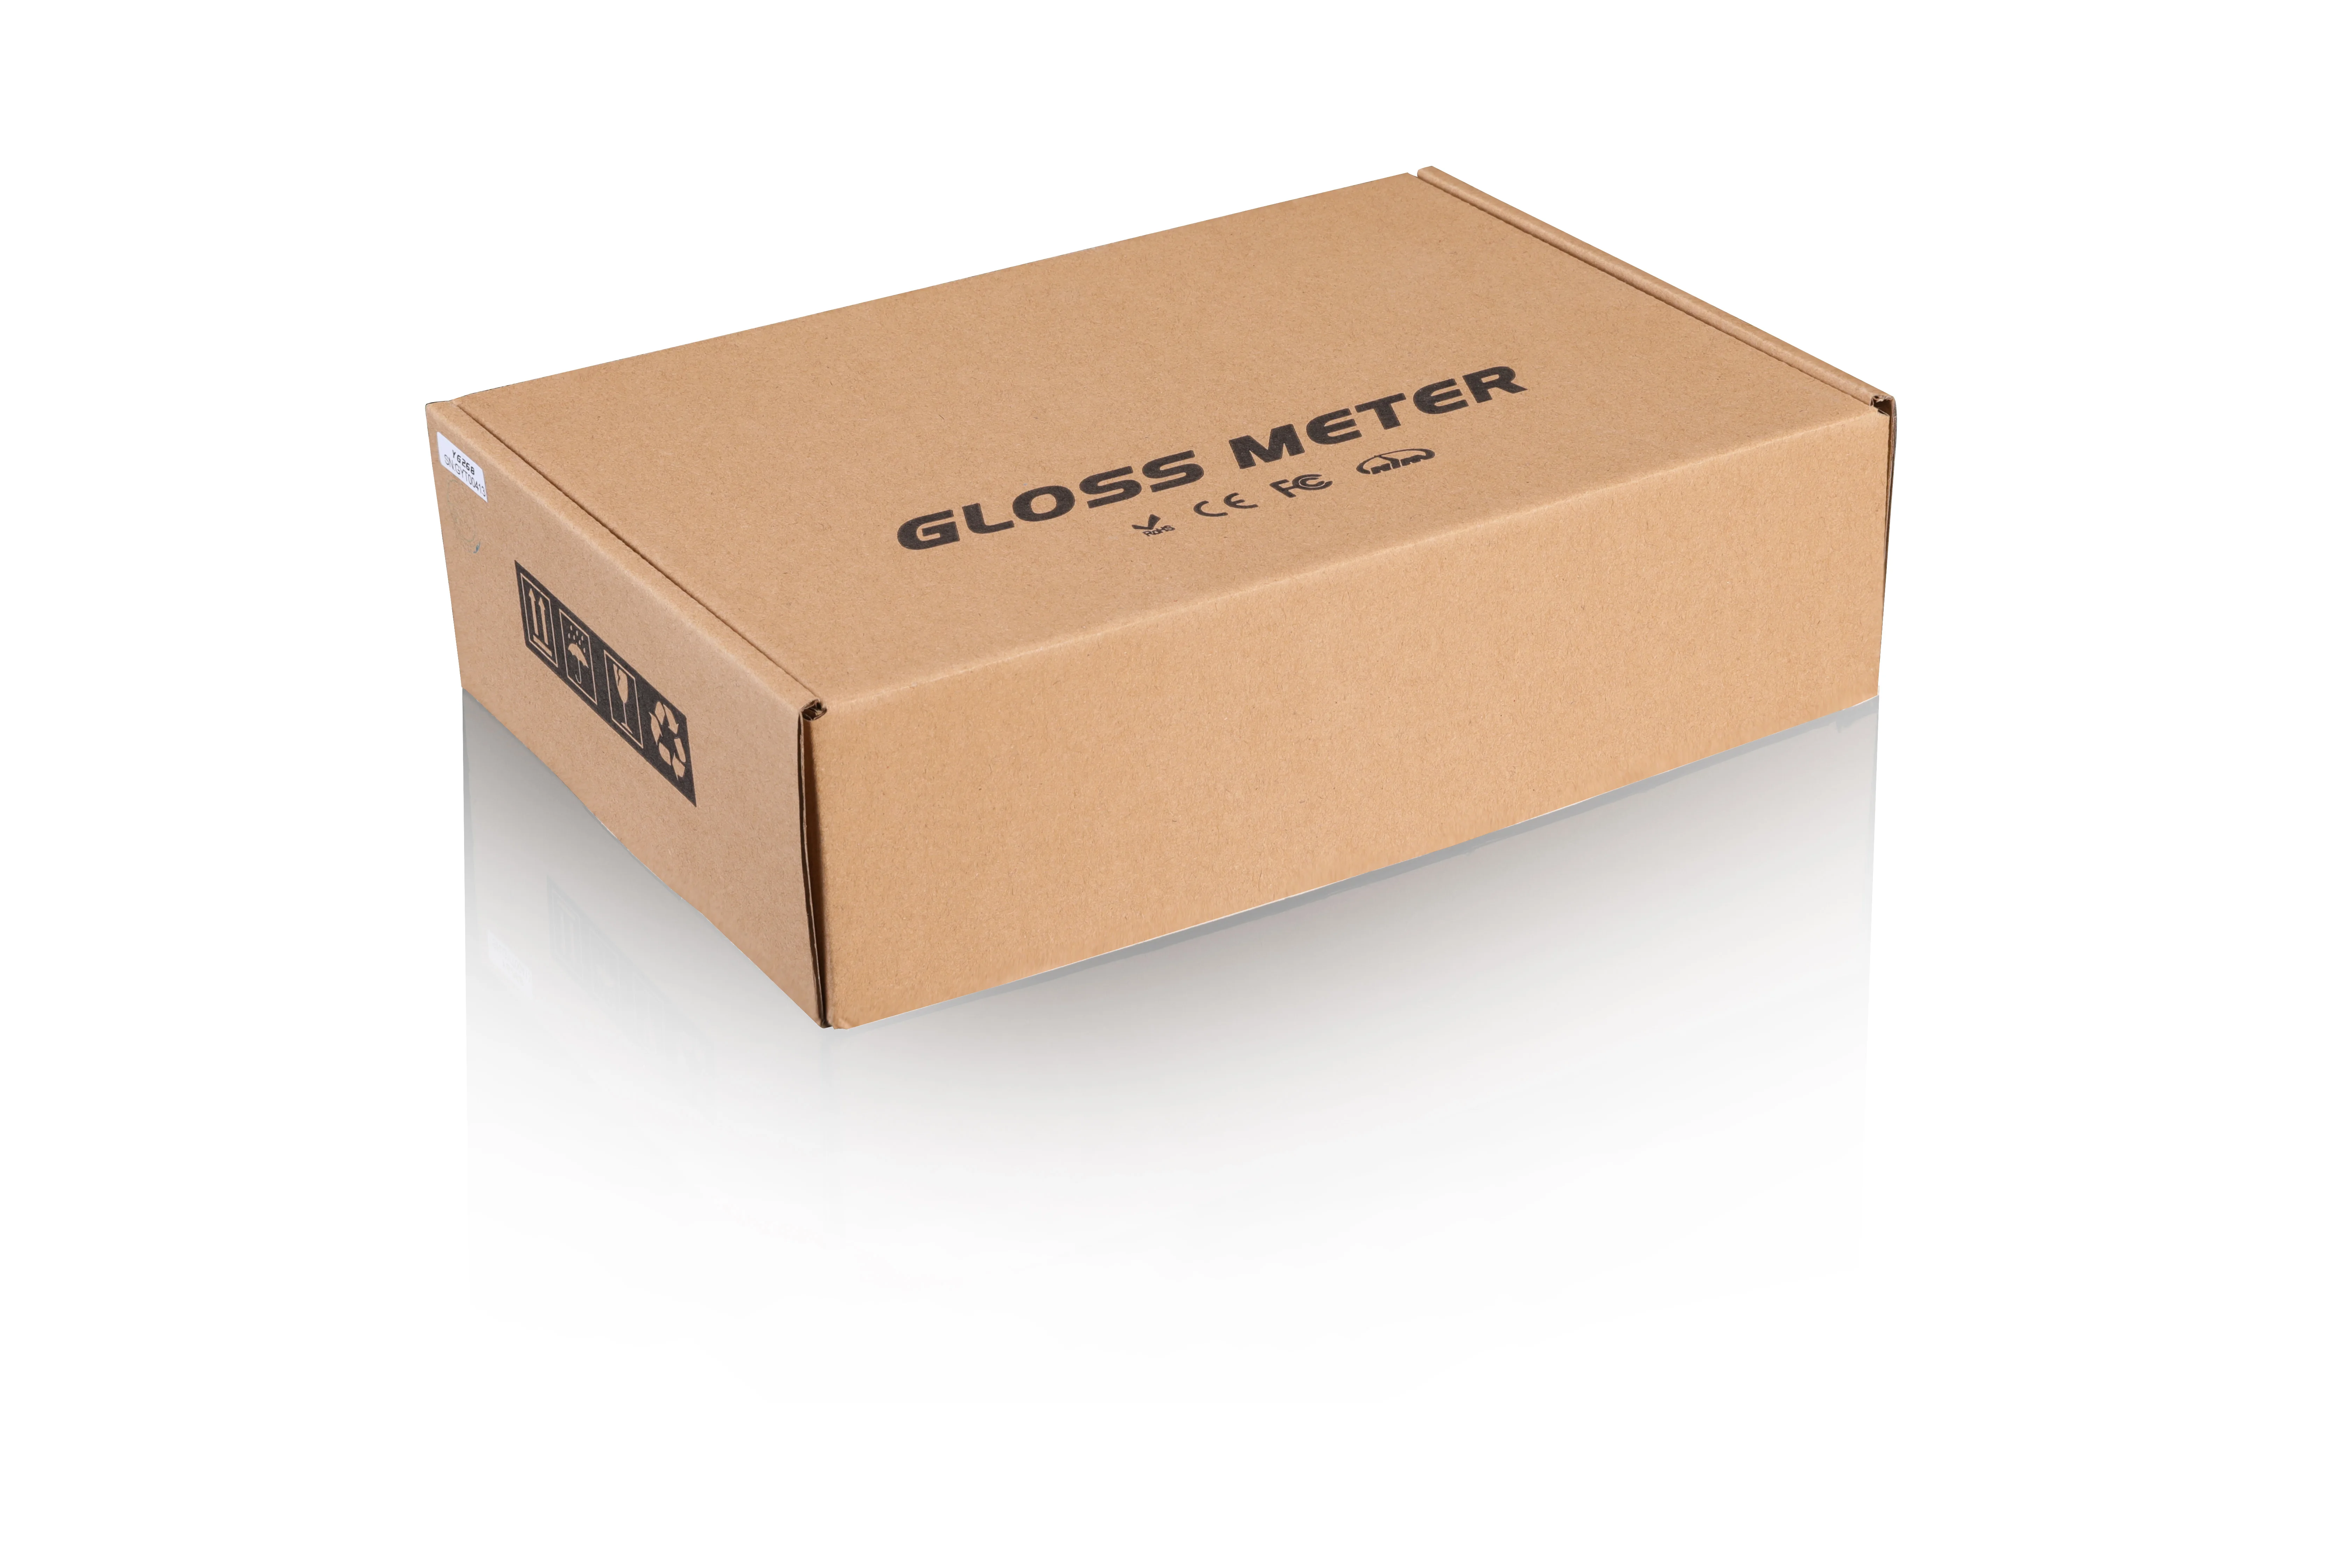 Le 200gu le meilleur marché mètre de lustre de Glossmeter de 60 degrés YG60S 3nh avec 1 gamme brillante de GU